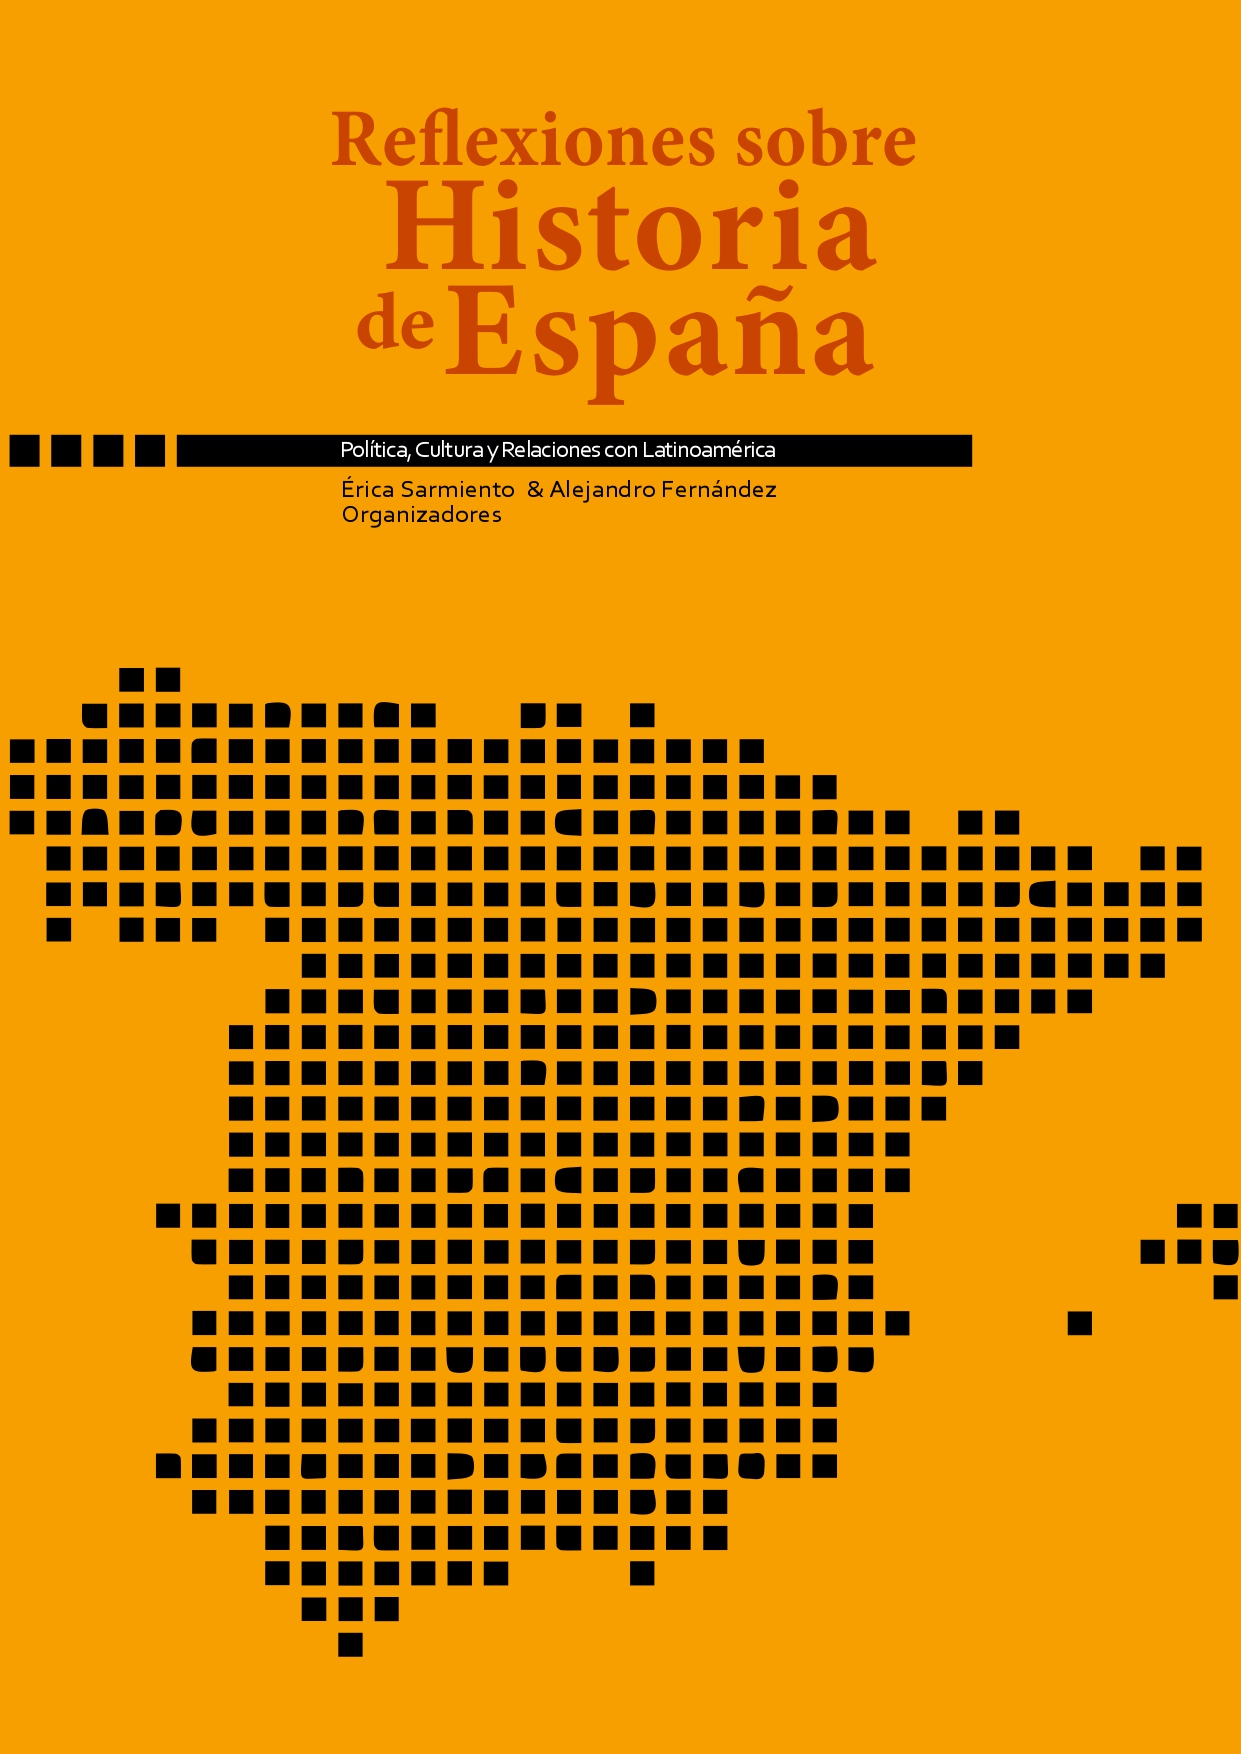 Imagen de portada del libro Reflexiones sobre Historia de España